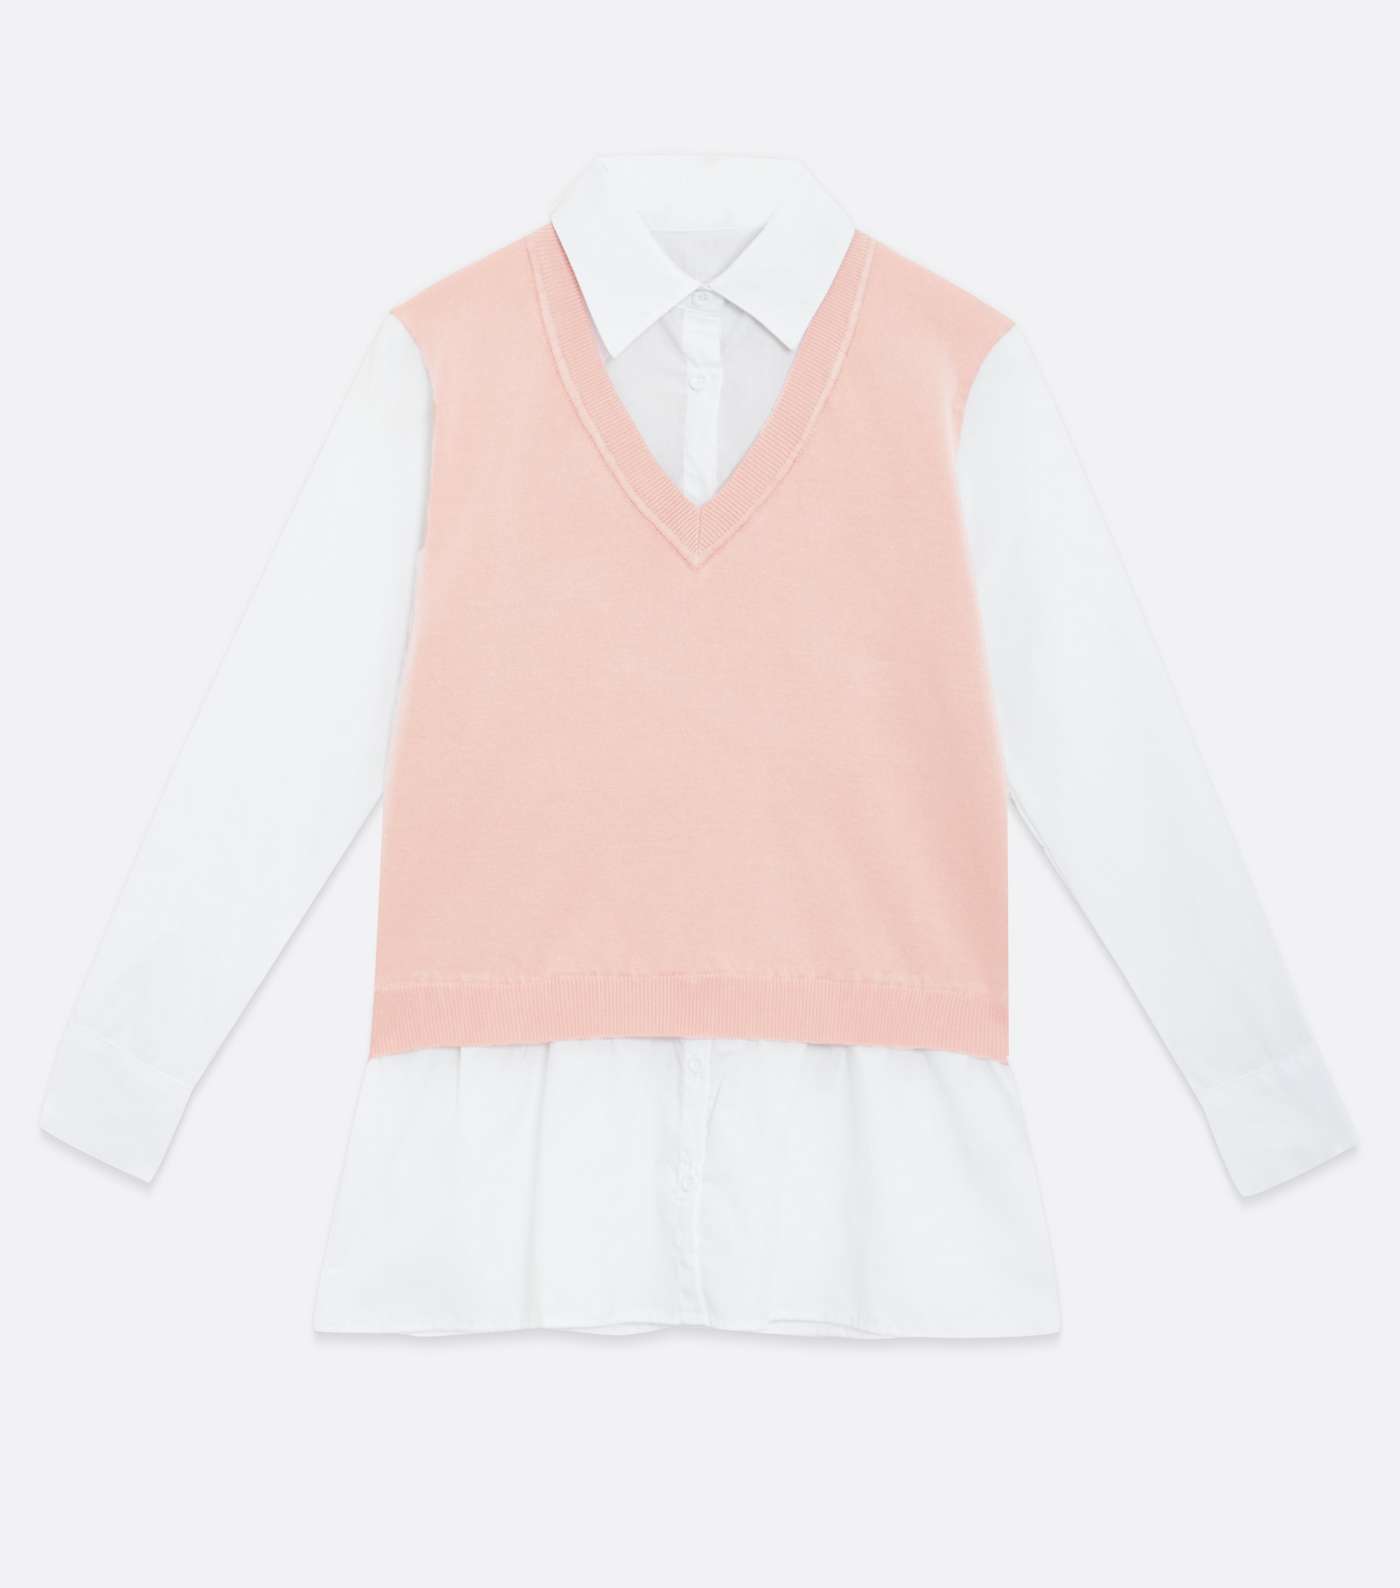 Blue Vanilla Mid Pink 2 in 1 Shirt Vest Jumper Image 5